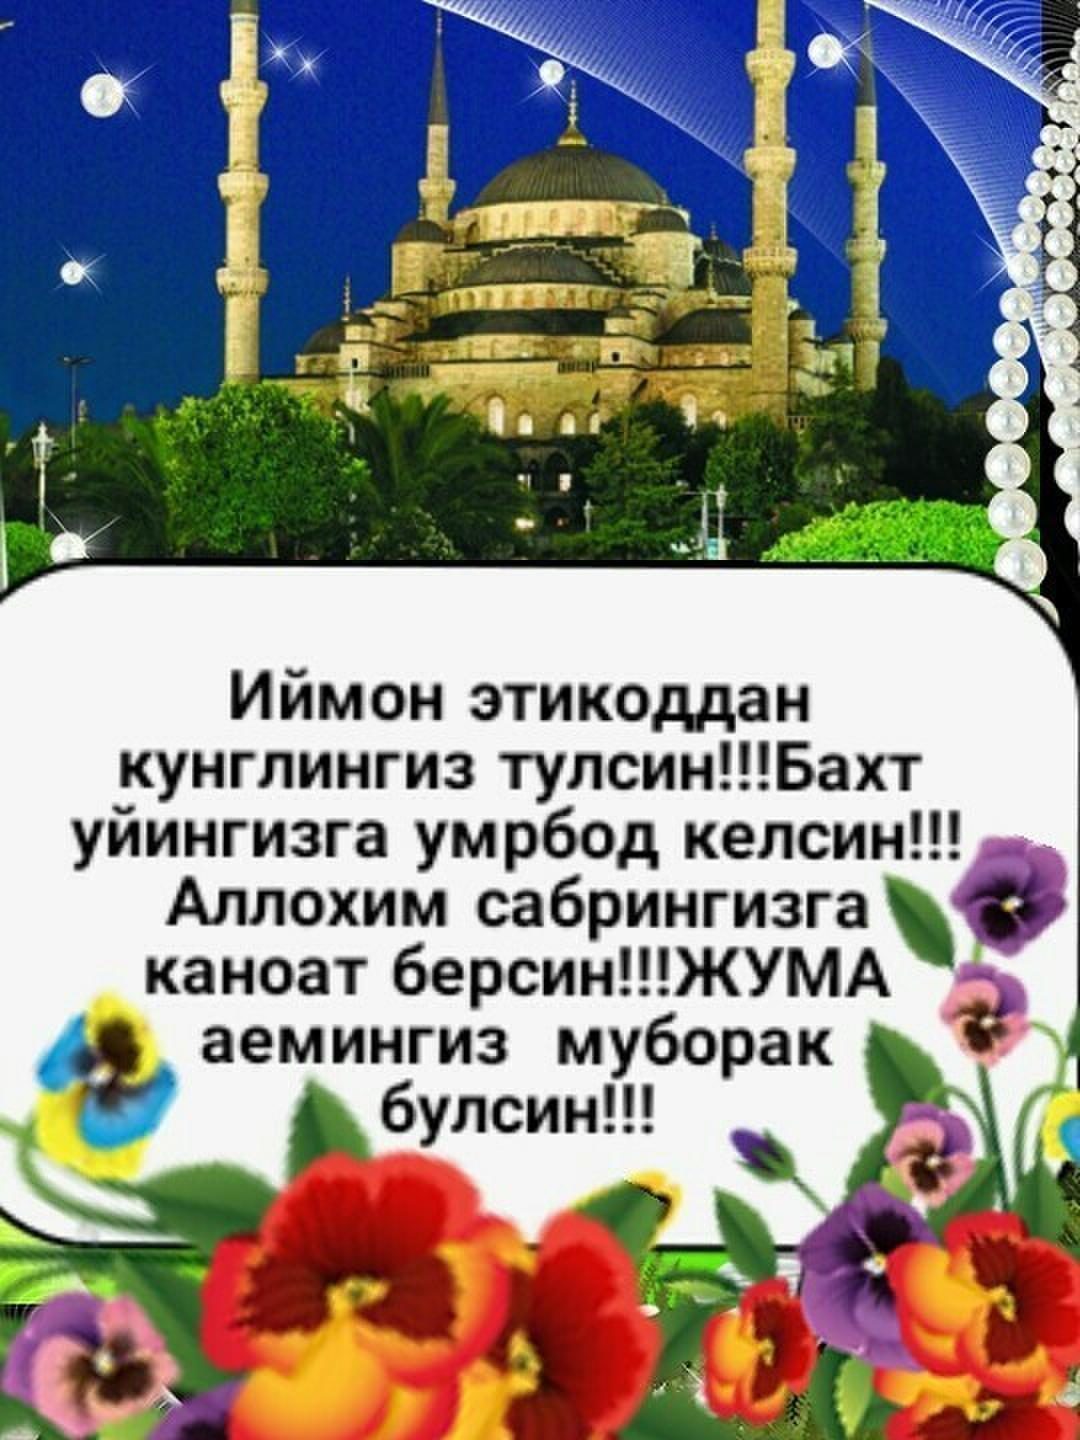 джума мубарак картинки узбекском языке